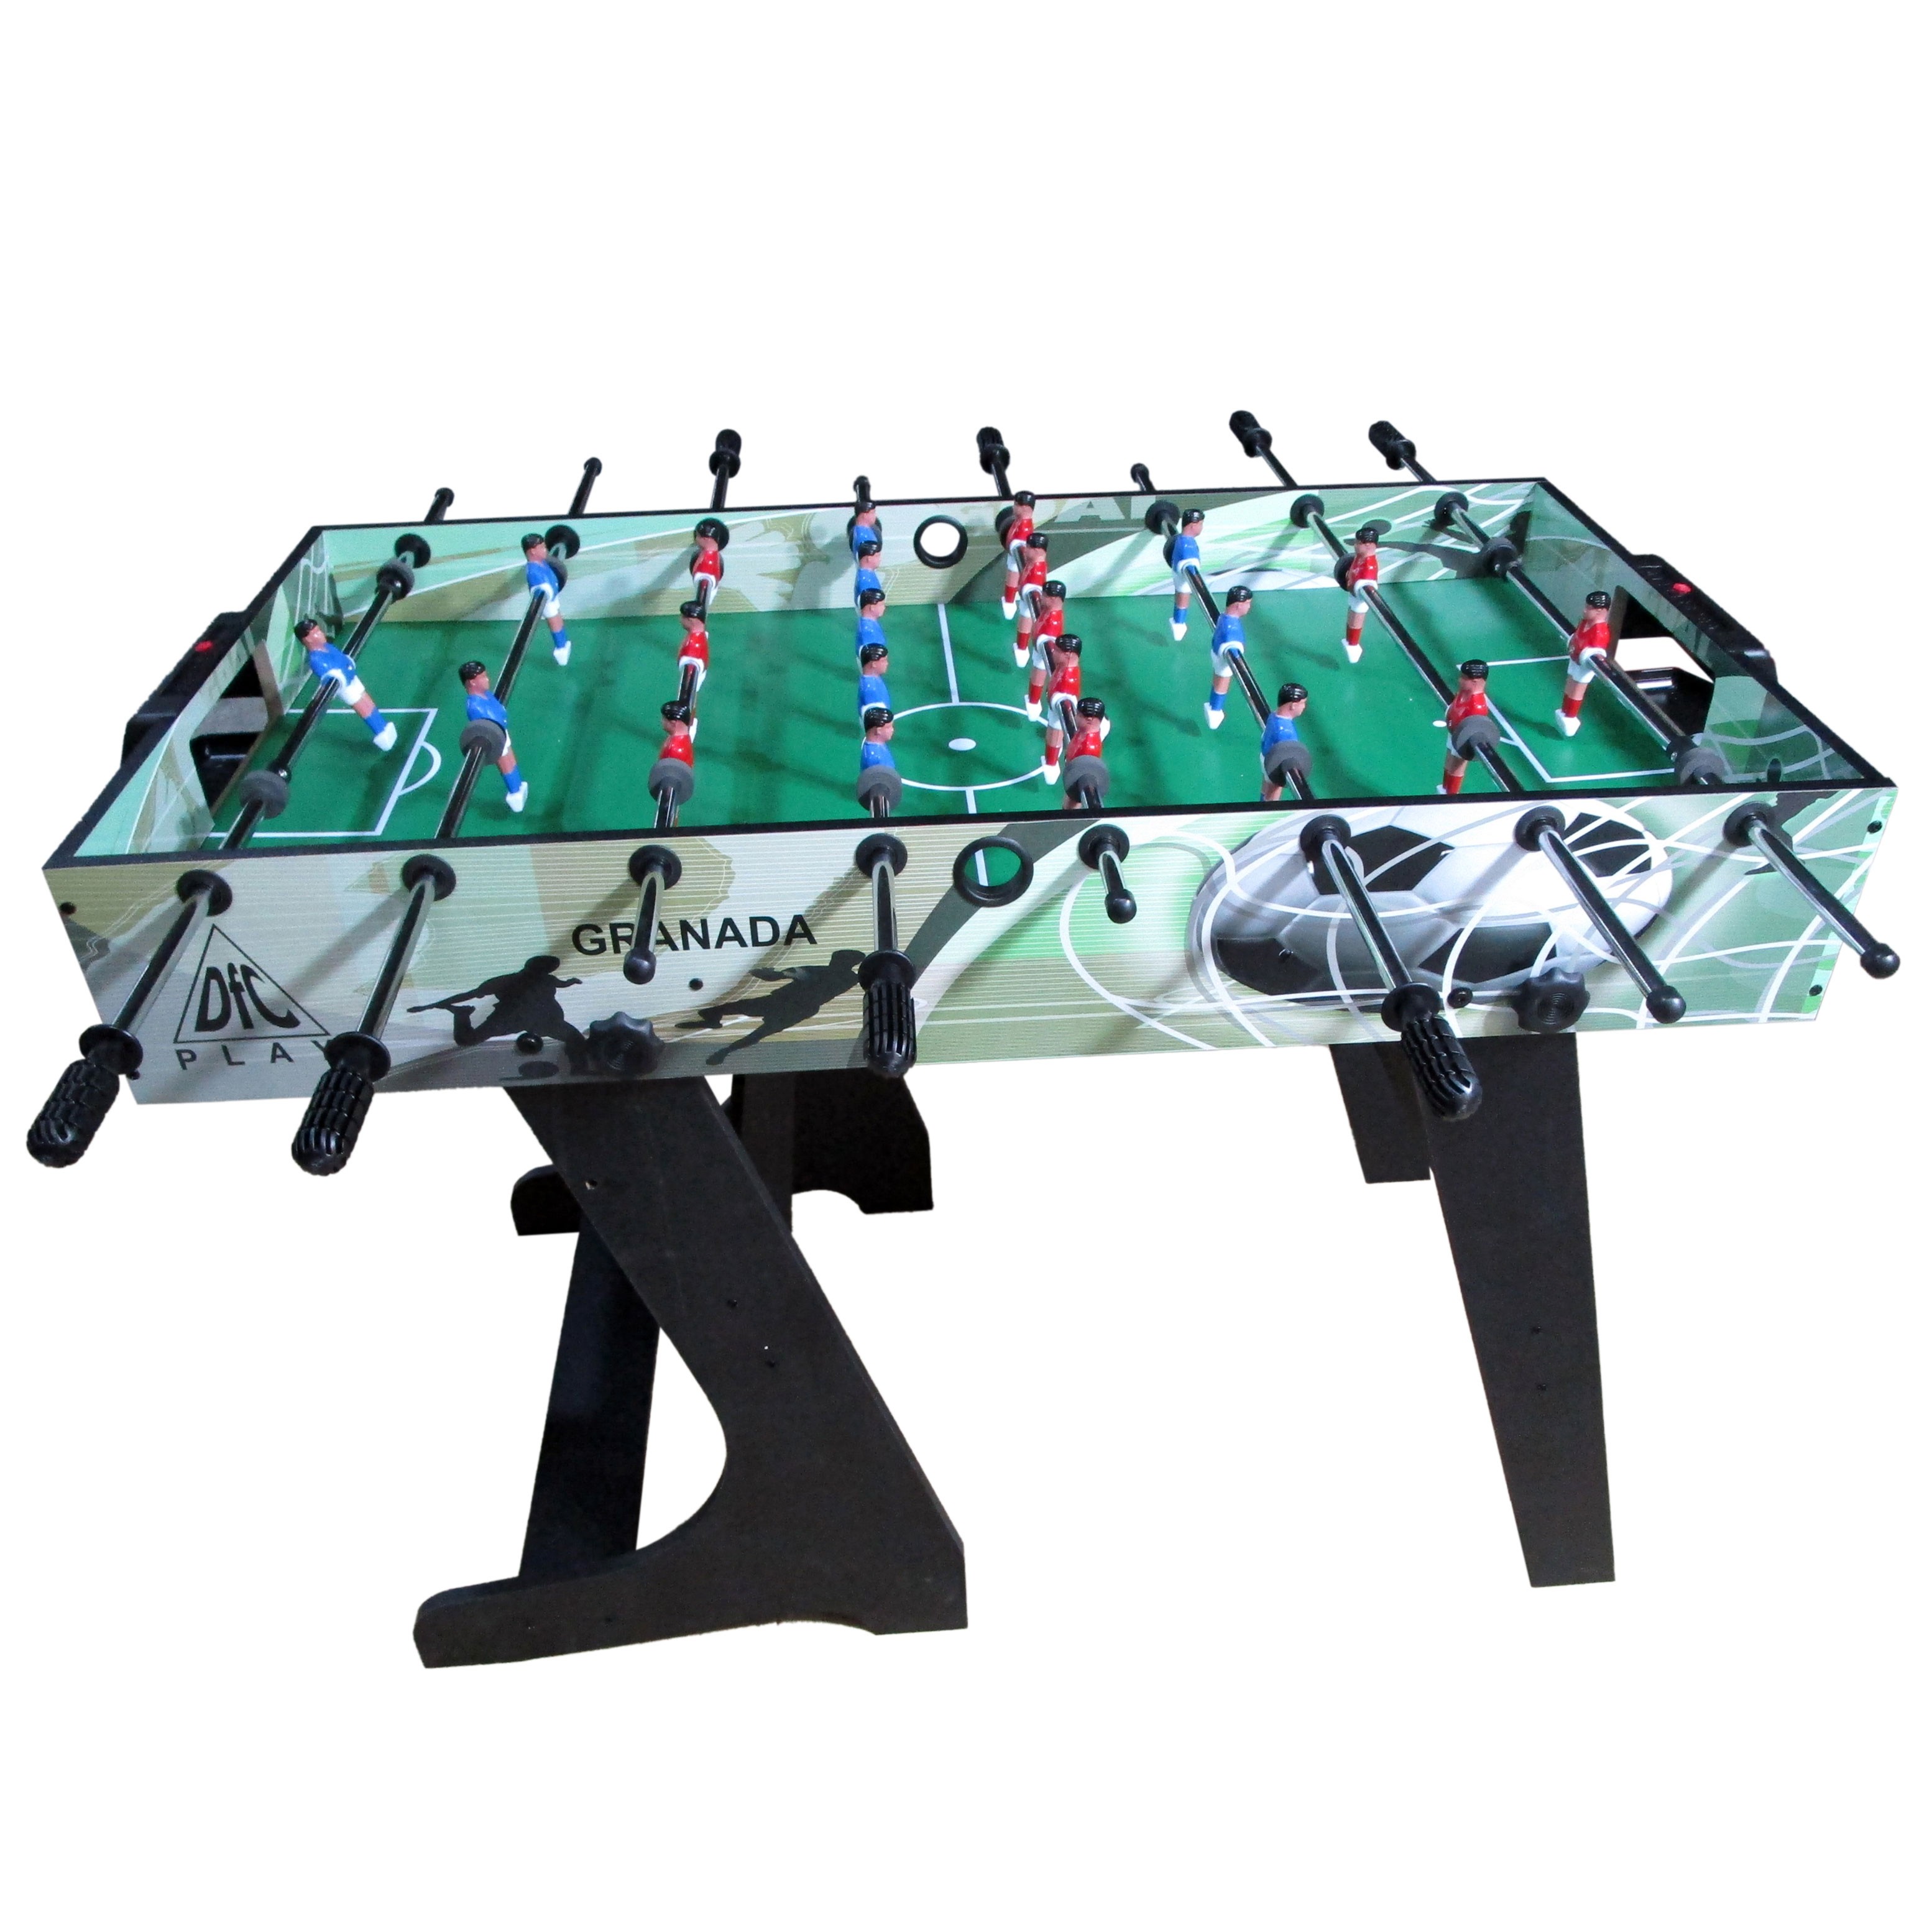 Игровой стол - футбол DFC GRANADA складной GS-ST-1470, изображение 2